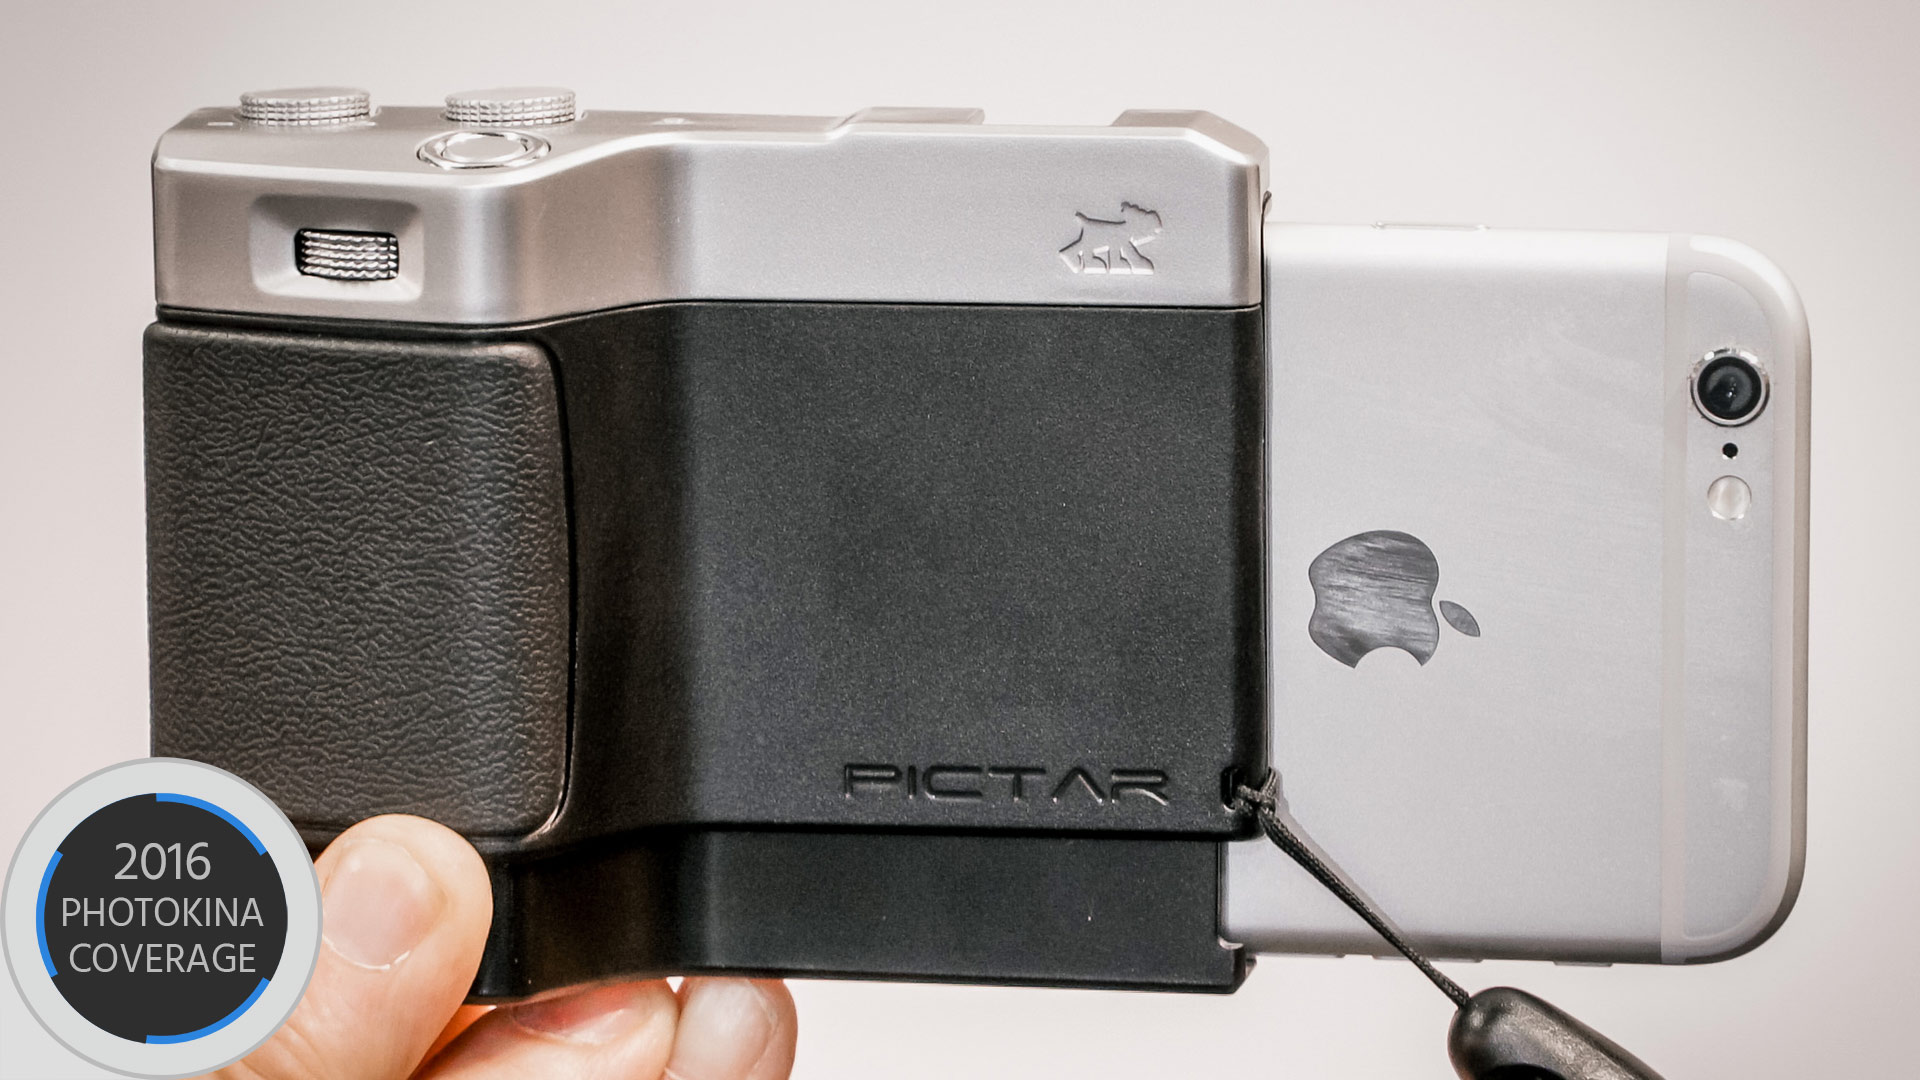 Pictar — iPhoneをコンパクトカメラに変身させる多機能グリップ